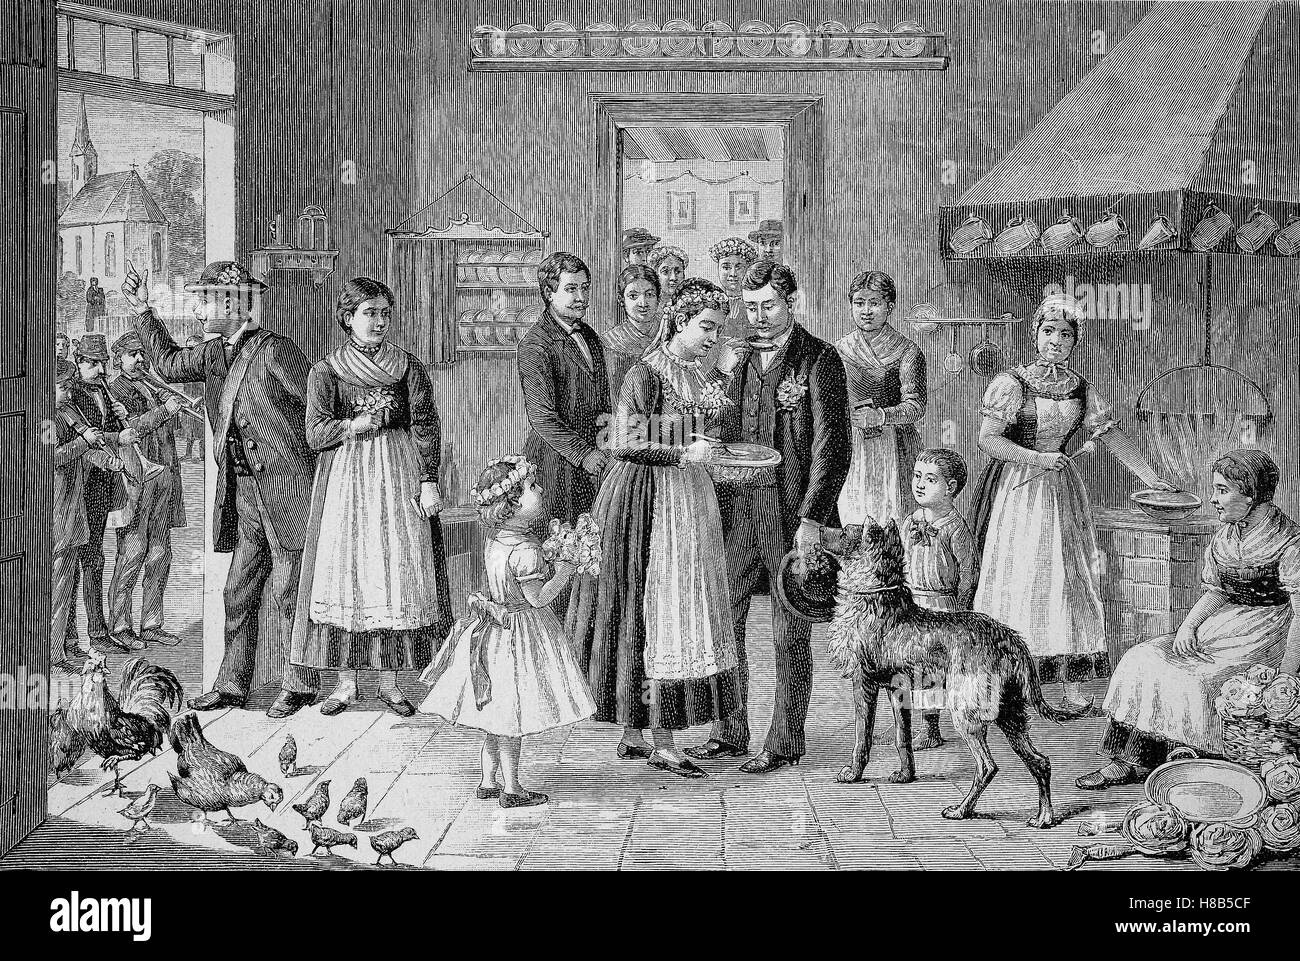 Mariage dans la tradition occidentale, la soupe : manger, gravure sur bois de 1892 Banque D'Images